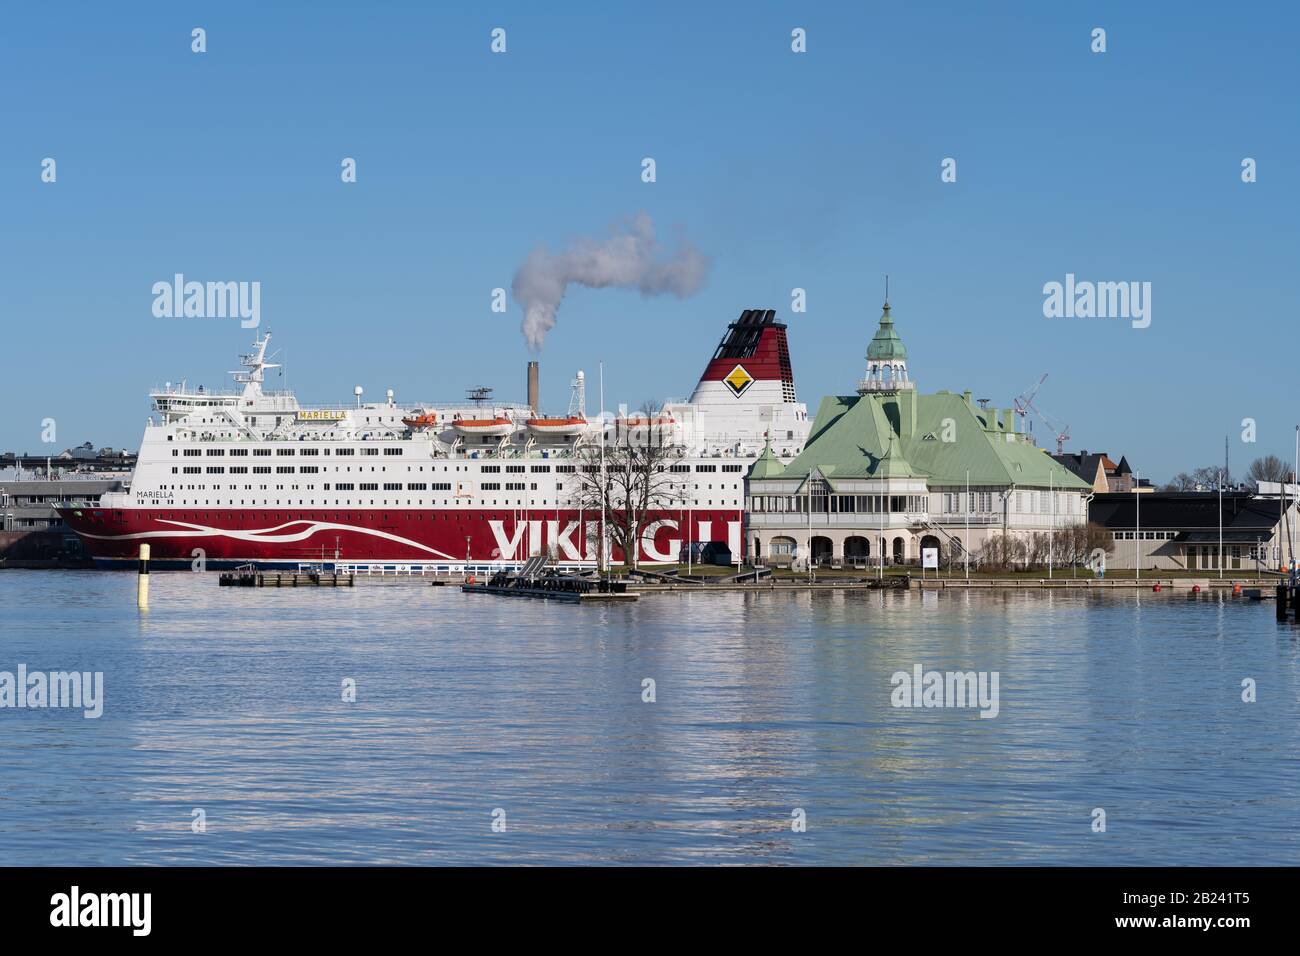 A Viking Line ferry docked in Helsinki, Finland. Stock Photo